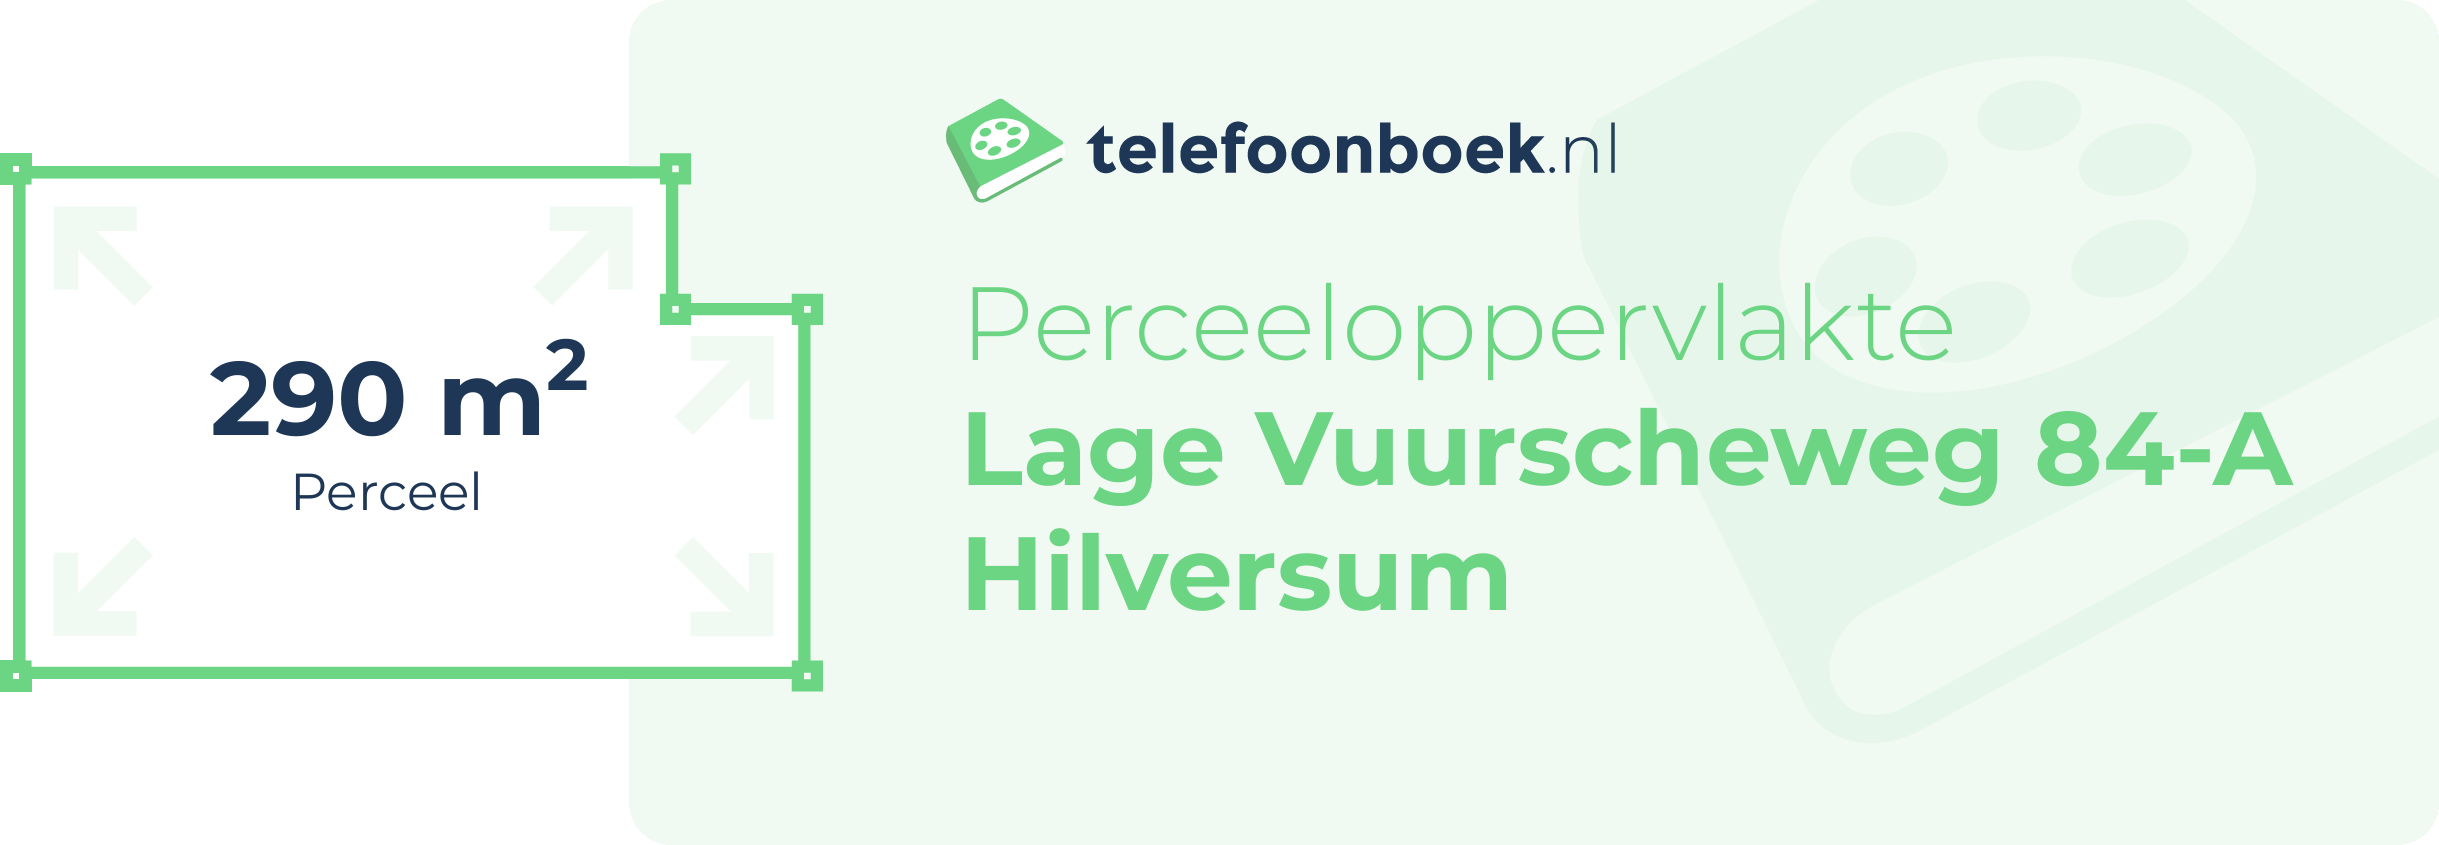 Perceeloppervlakte Lage Vuurscheweg 84-A Hilversum